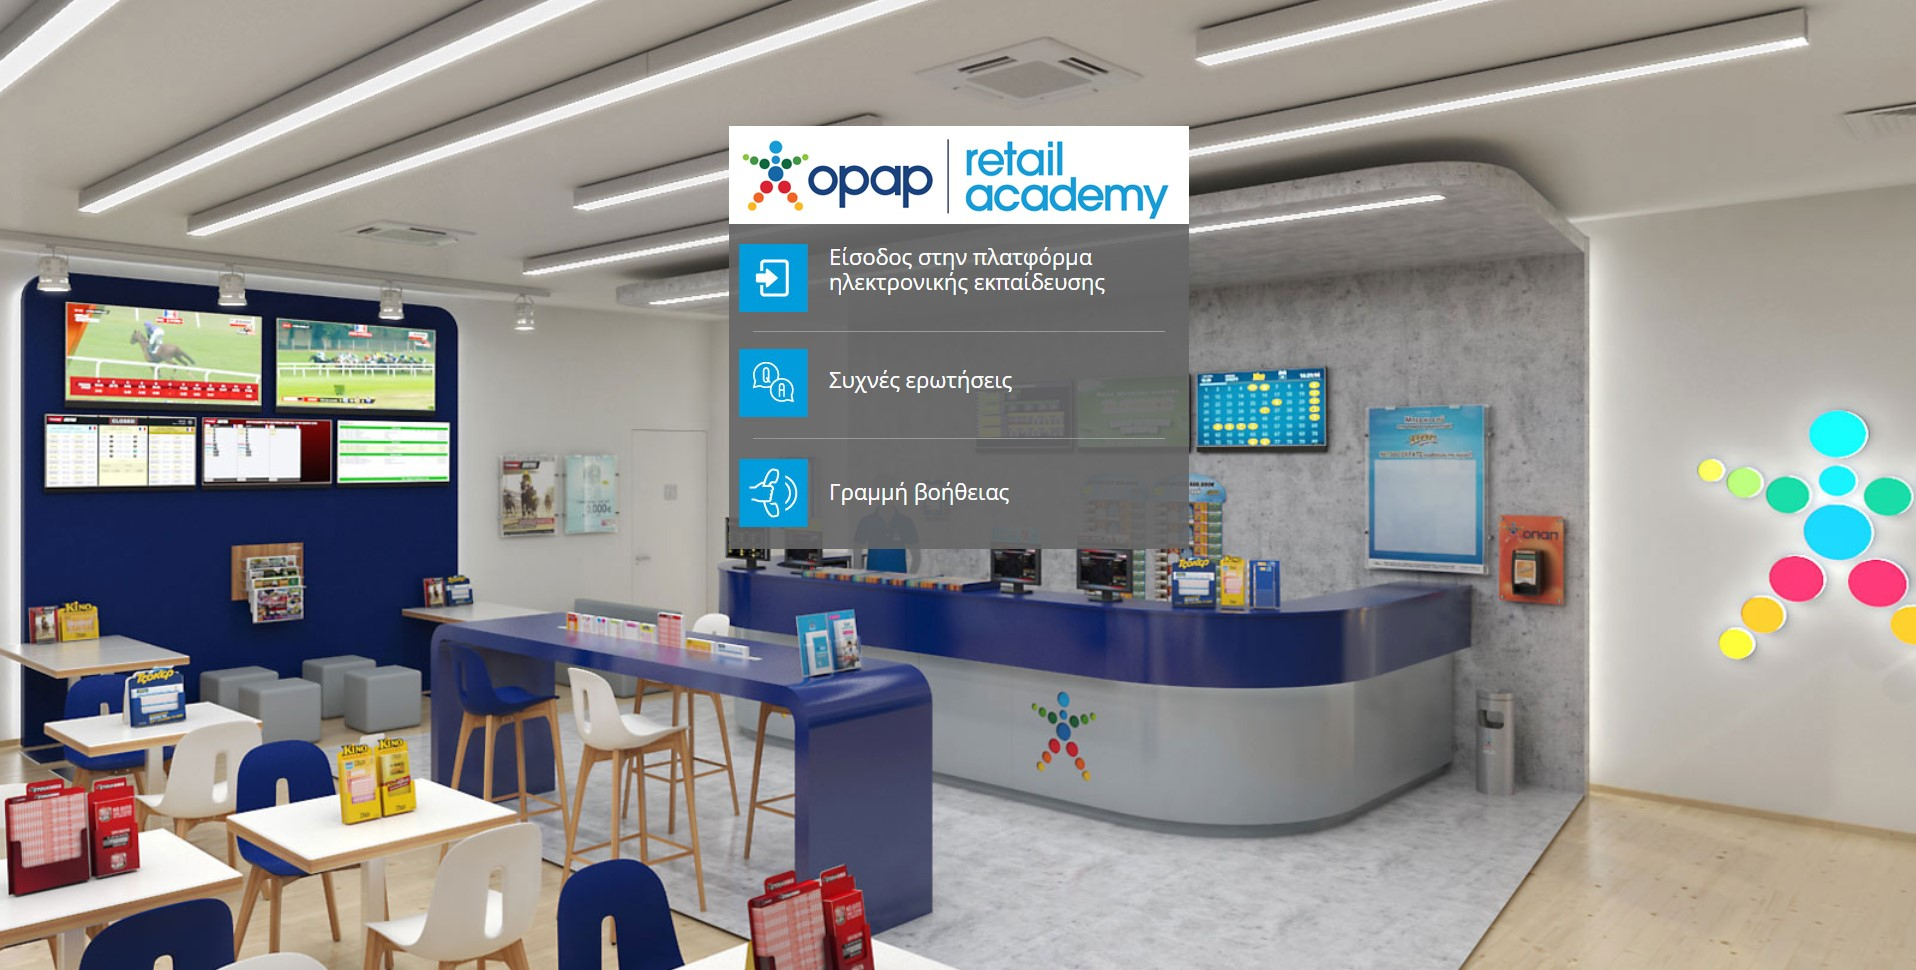 ΟΠΑΠ Retail Academy